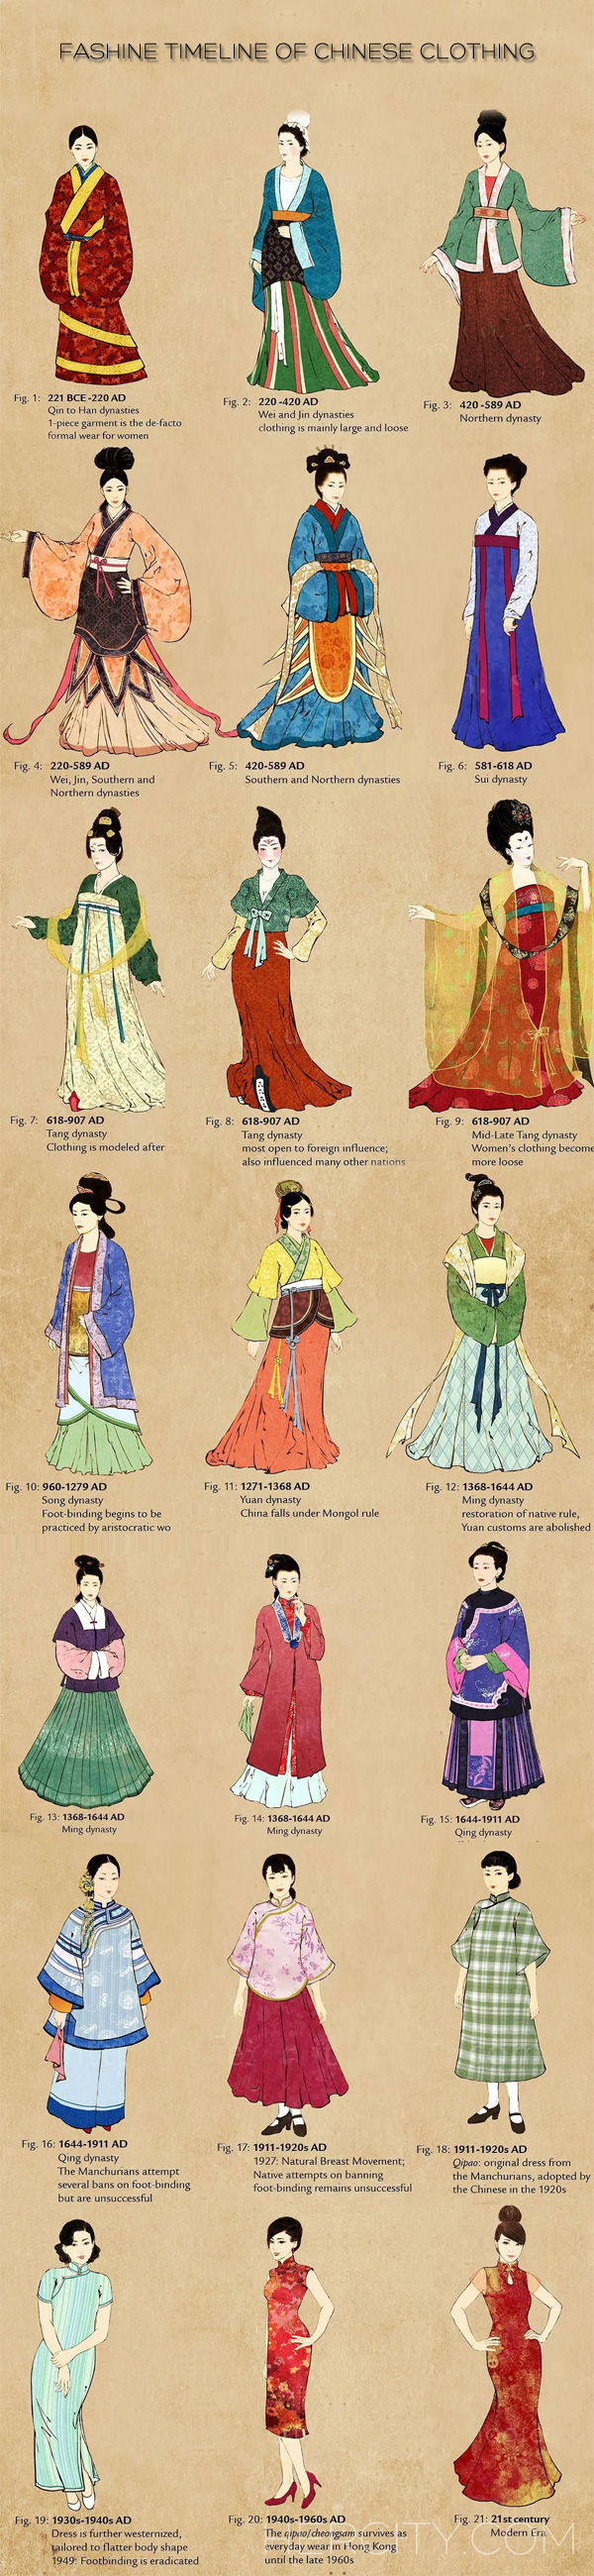 一组图告诉你中国历代女子服饰变迁